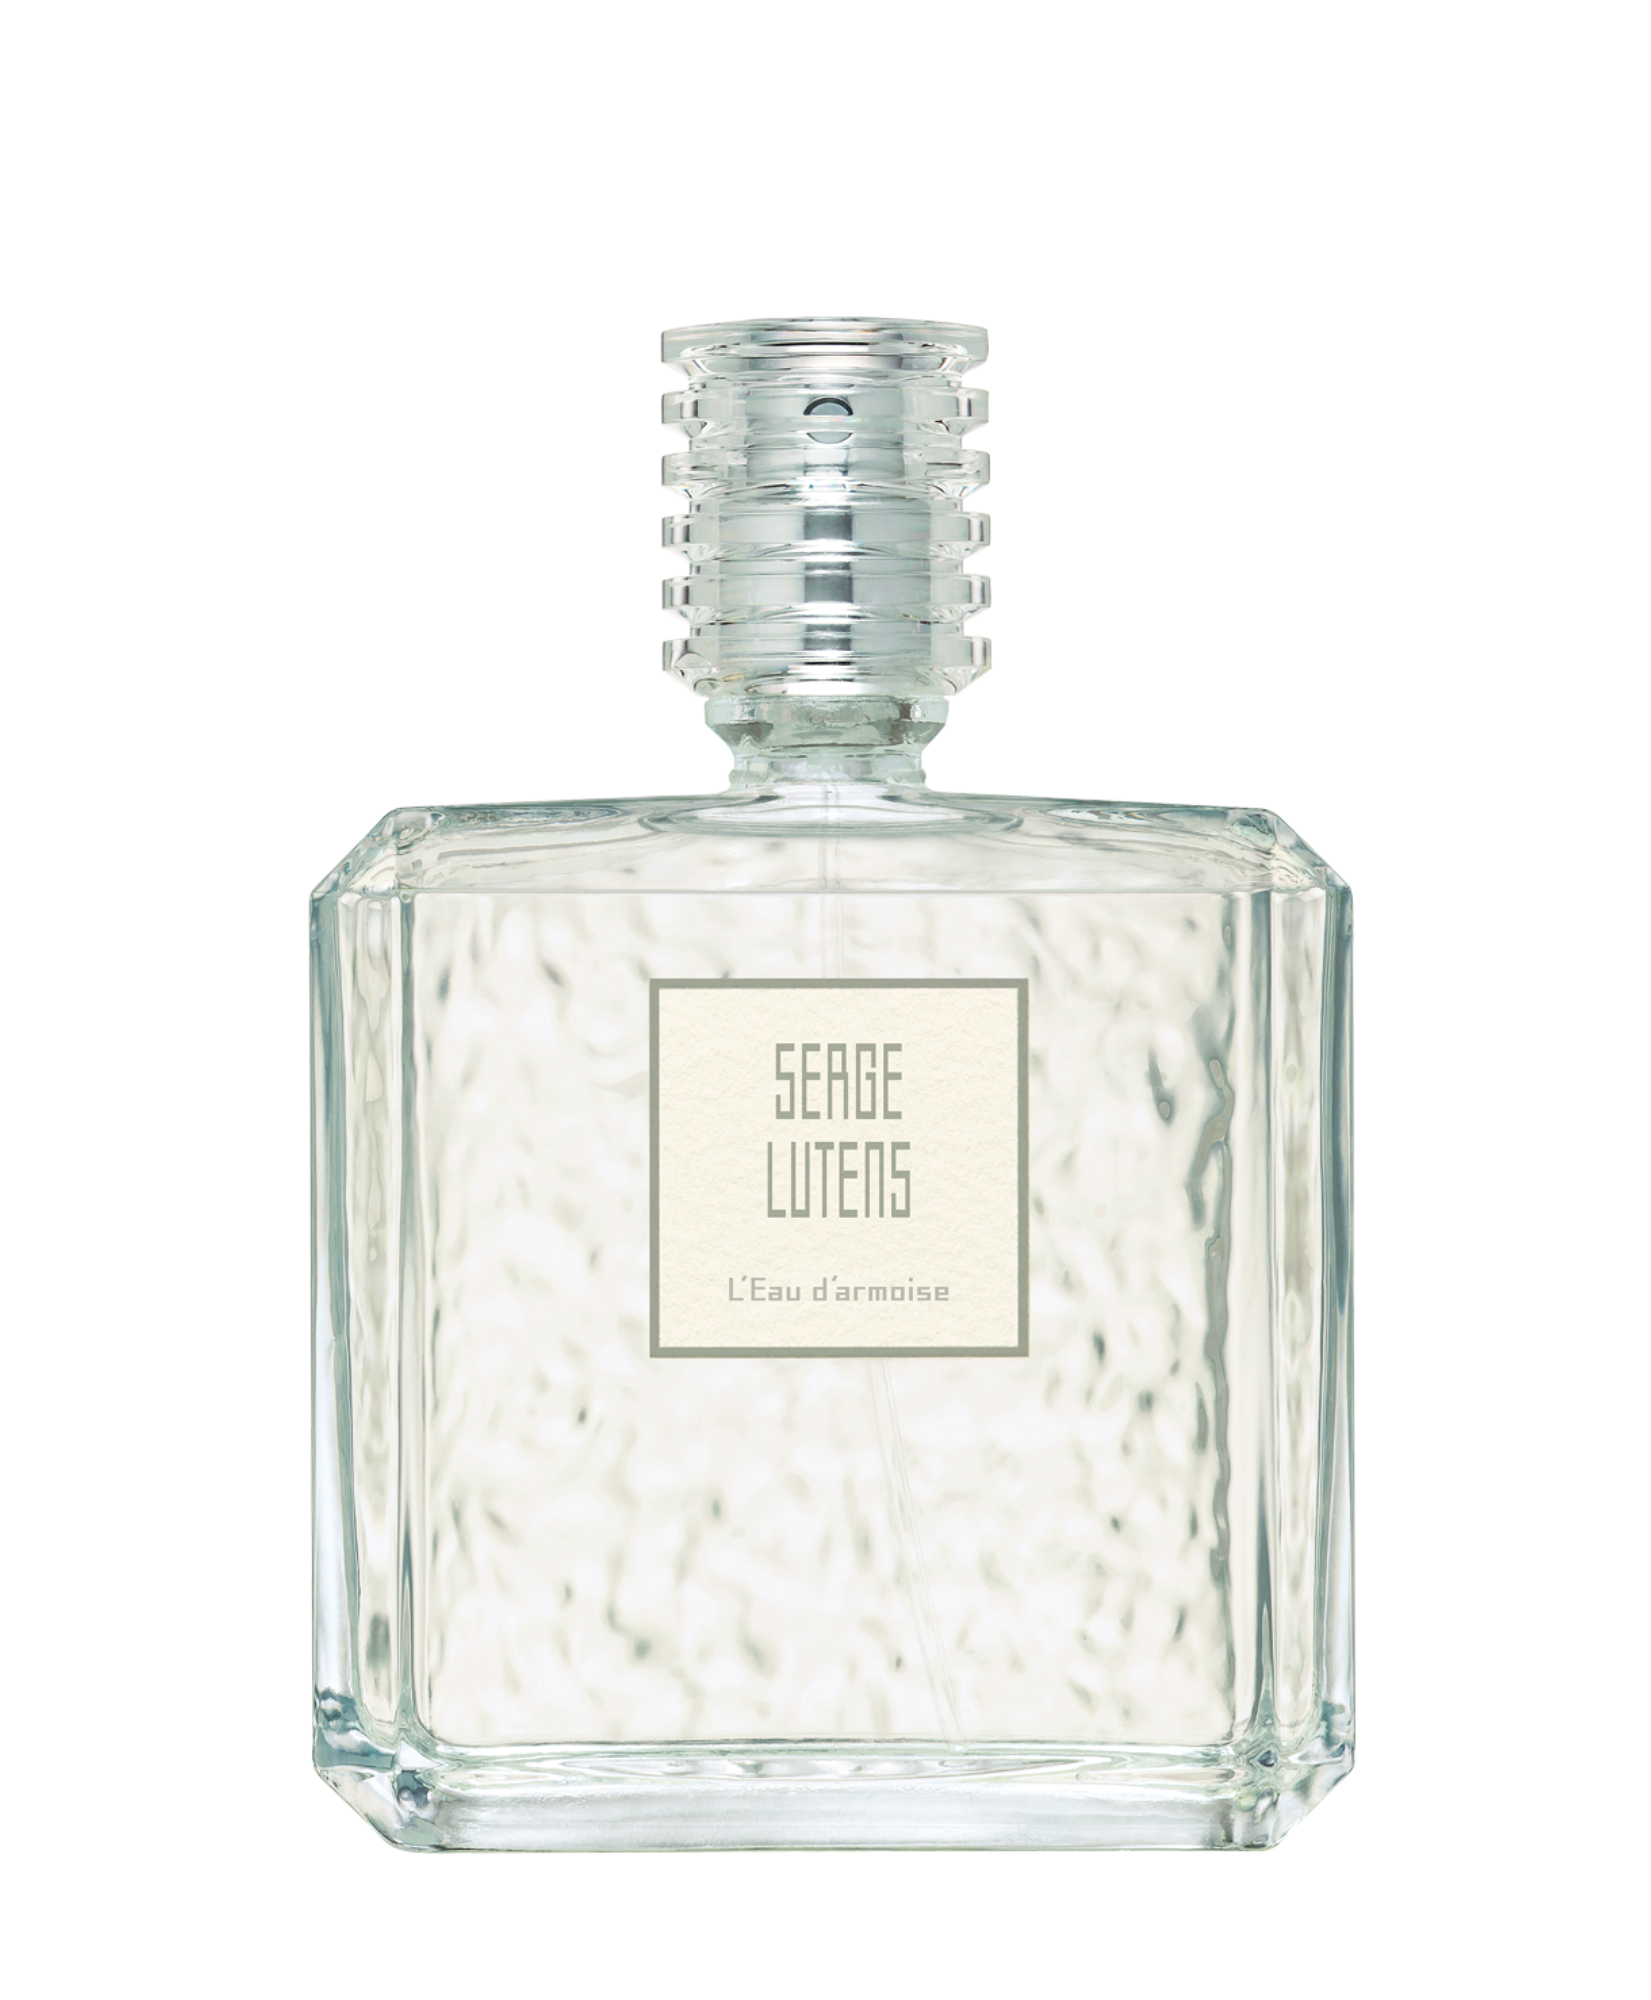 Parfum L'Eau d'armoise 100 ml Serge Lutens